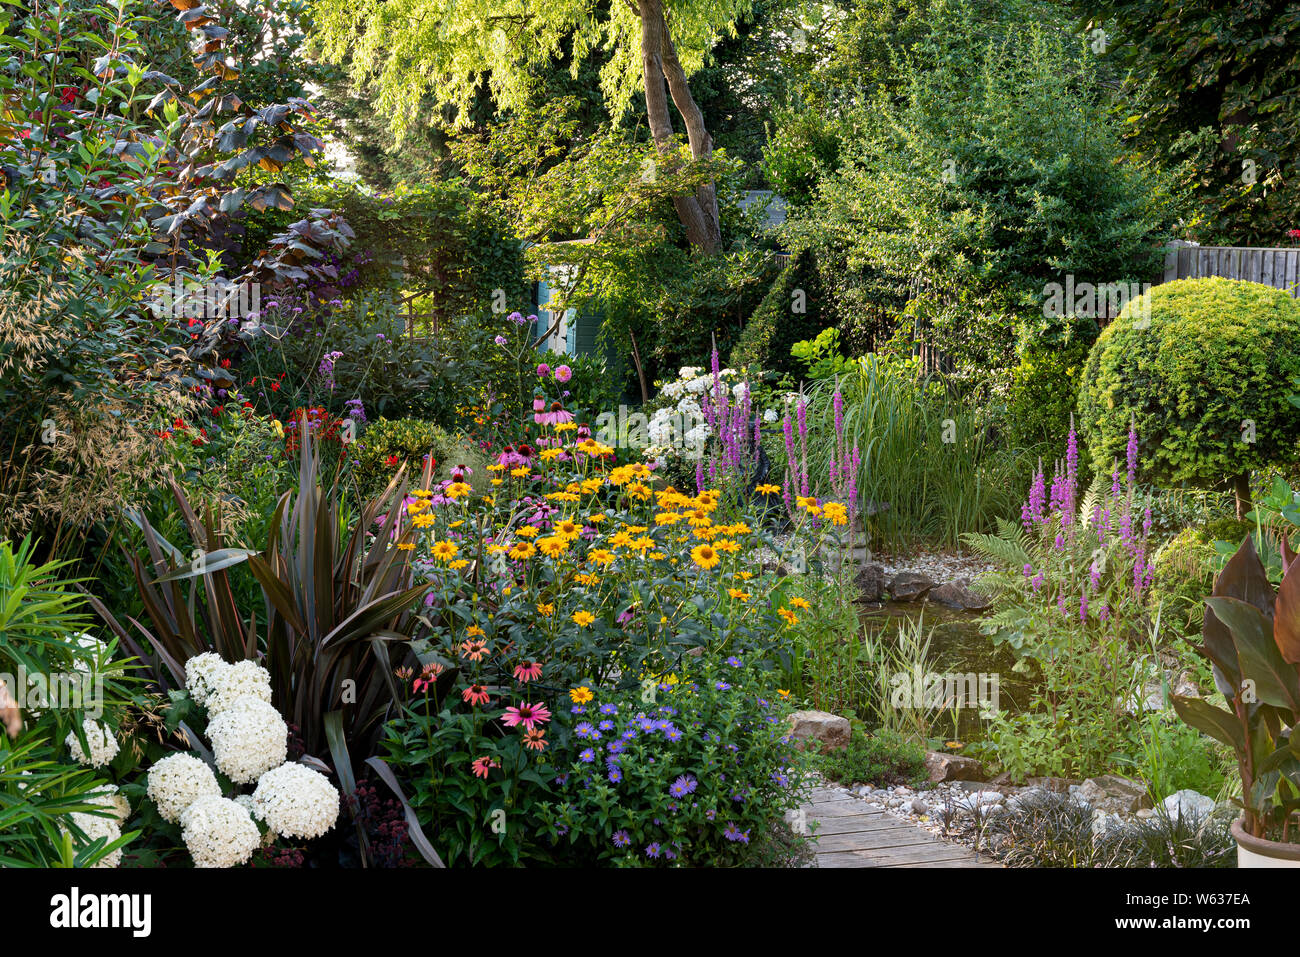 Mixed flower border with garden pond, in an English suburban garden. Stock Photo